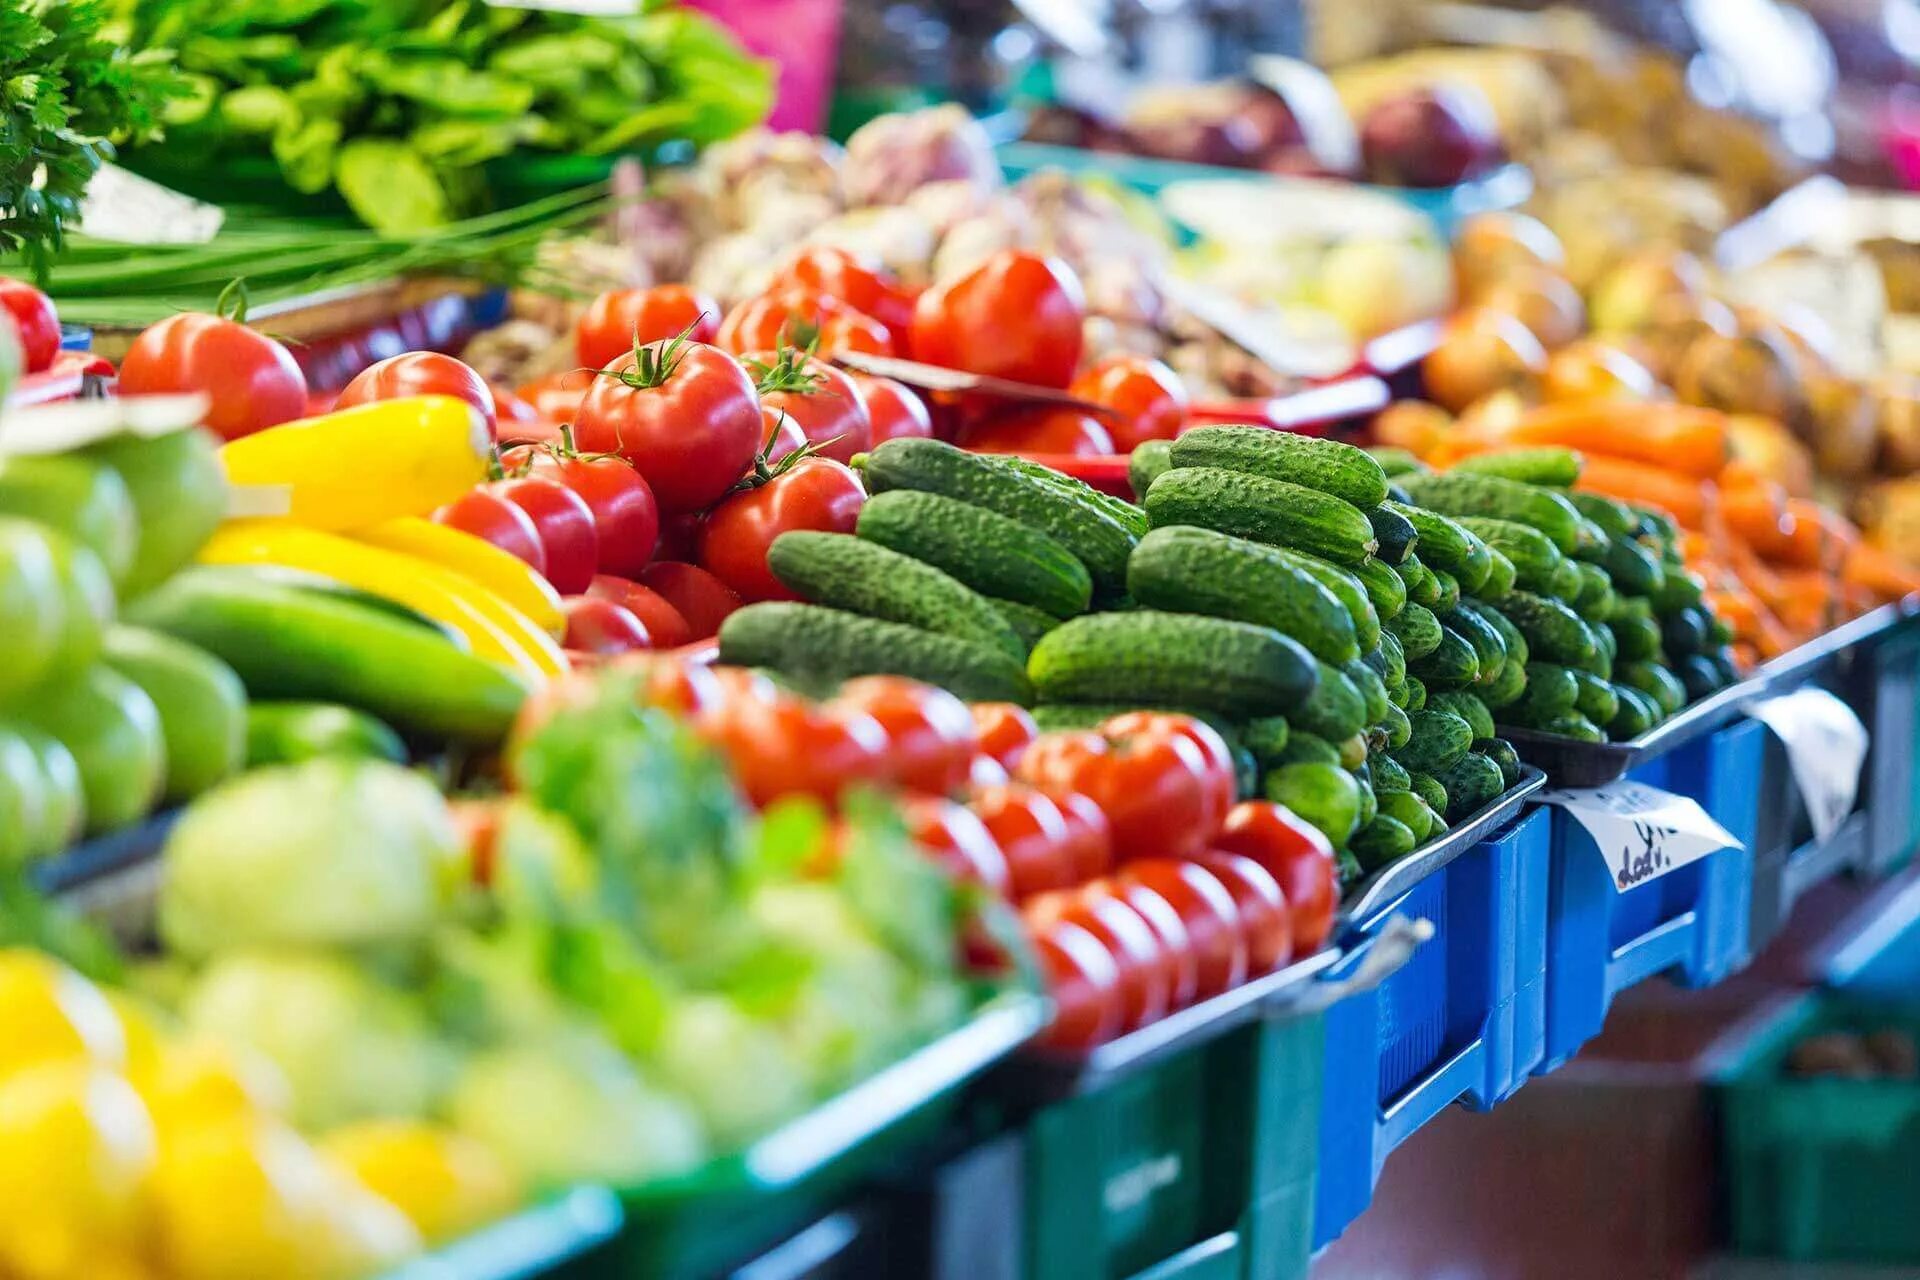 Vegetables shop. Мева-сабзавотчилик кластер. Овощи на рынке. Продукты овощи. Овощи на прилавке.